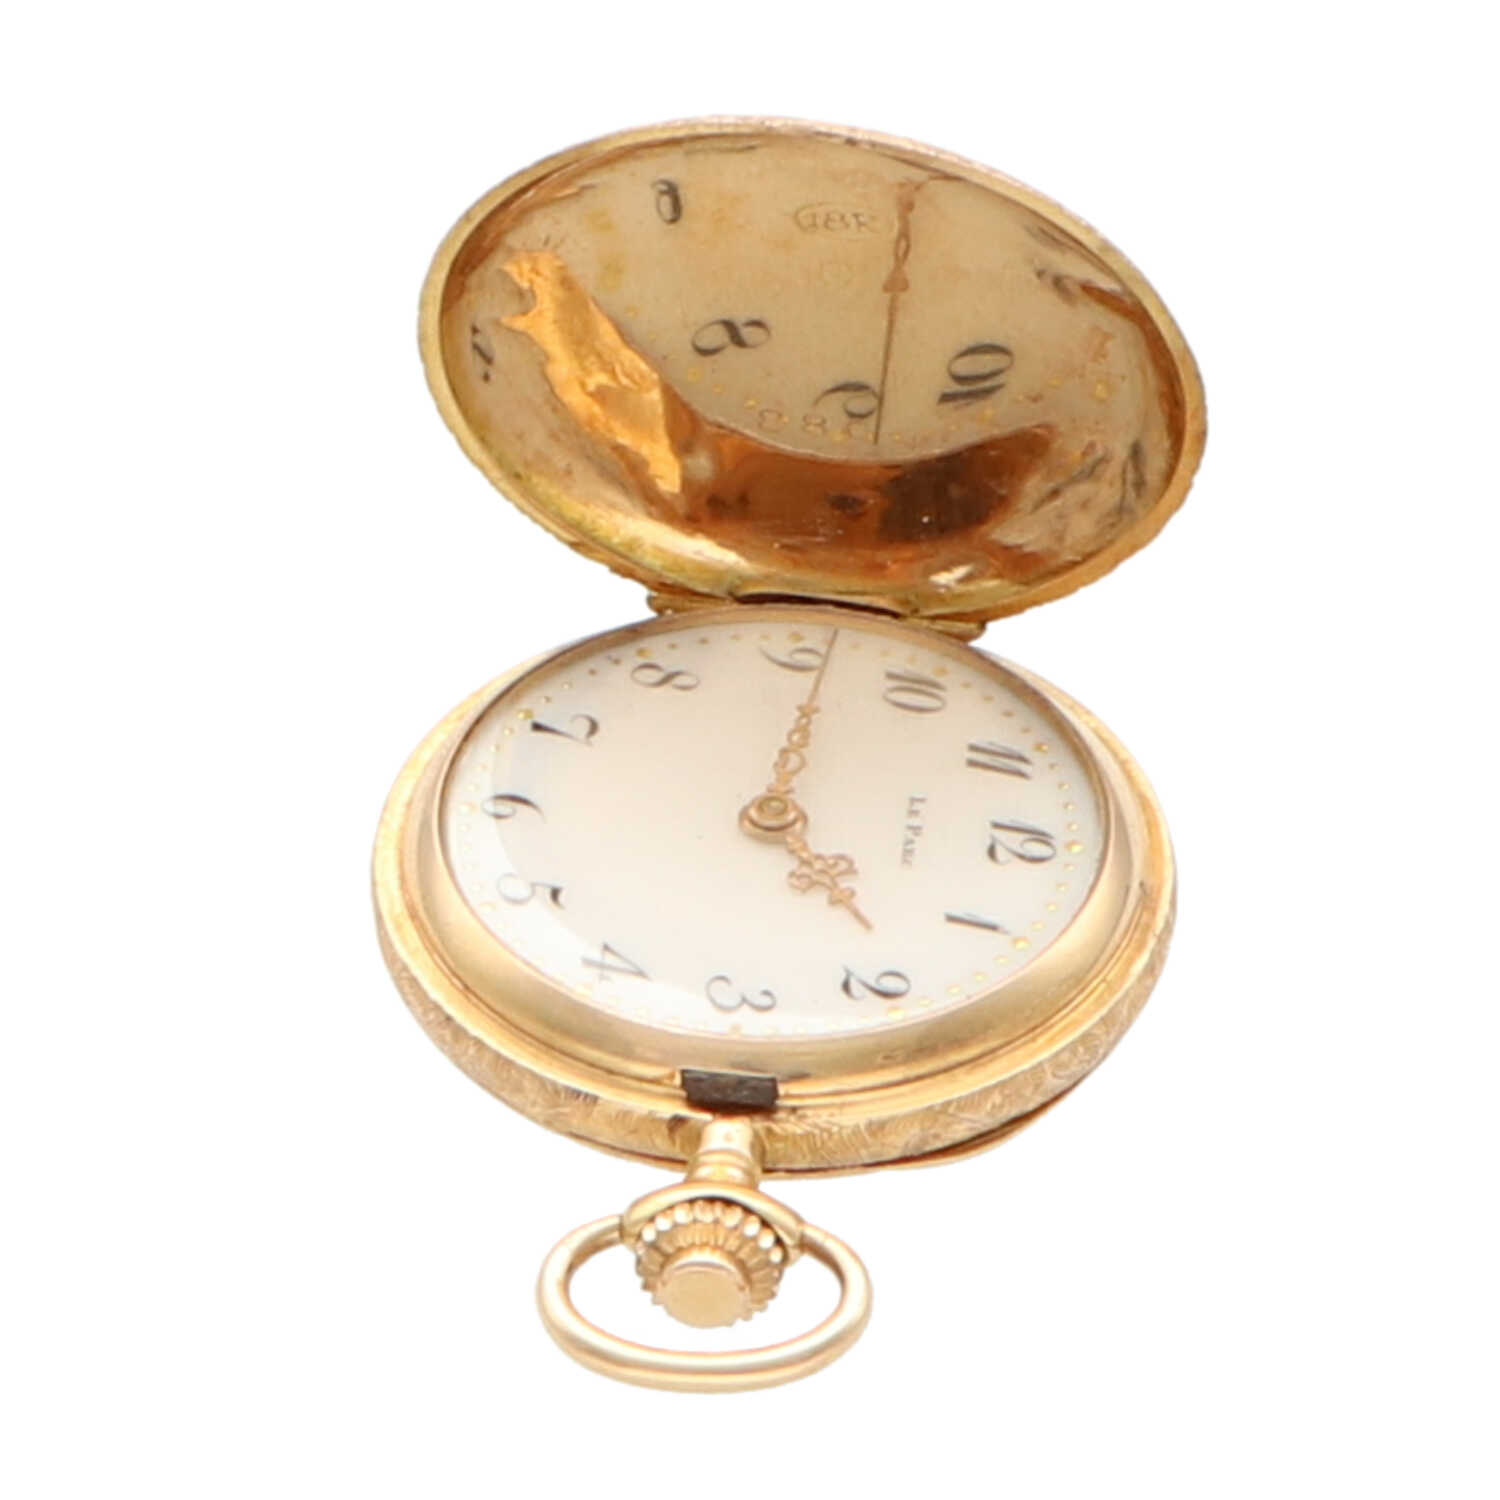 Reloj bolsillo Le Parc vintage. | Comprar reloj segunda mano